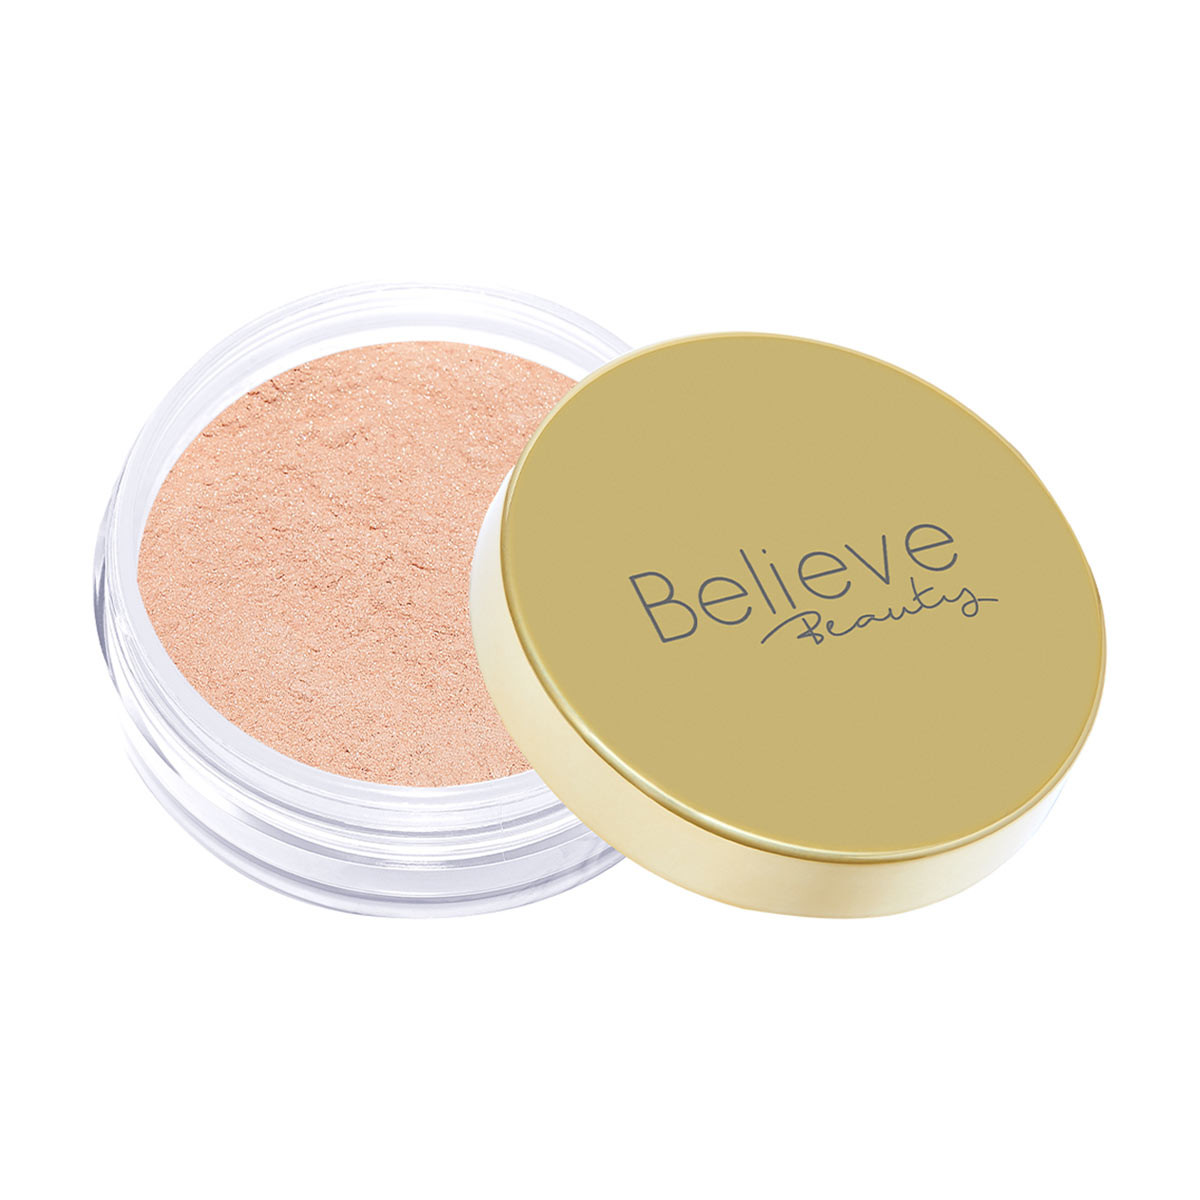 Believe Beauty Radiant Glow Powder